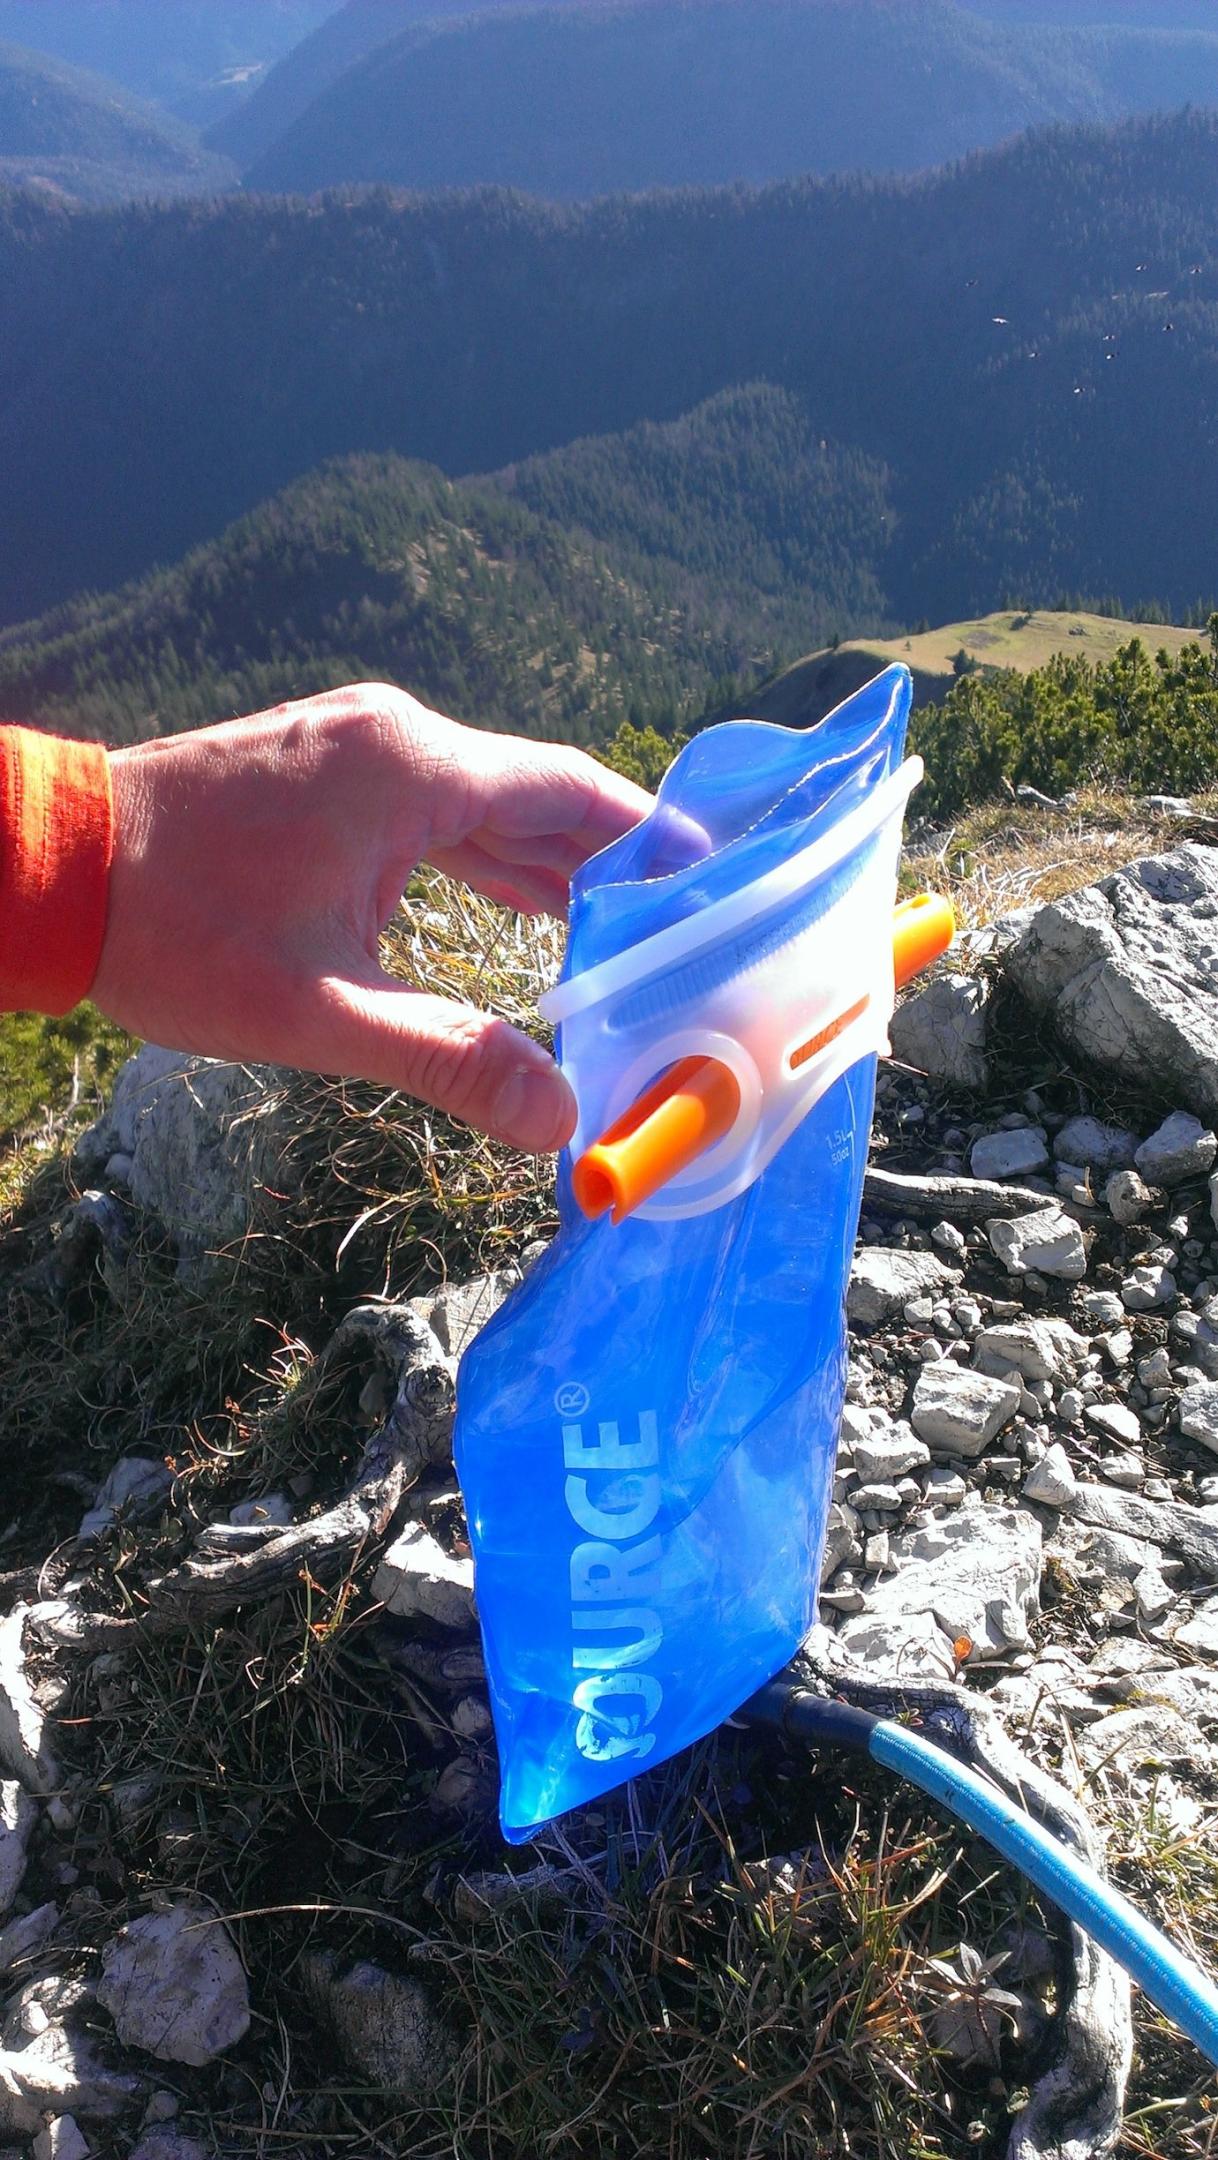 Testbericht - Source Ultimate Hydration System: Widepac Trinksystem - ultimative Wasserquelle für durstige Outdoorsportler